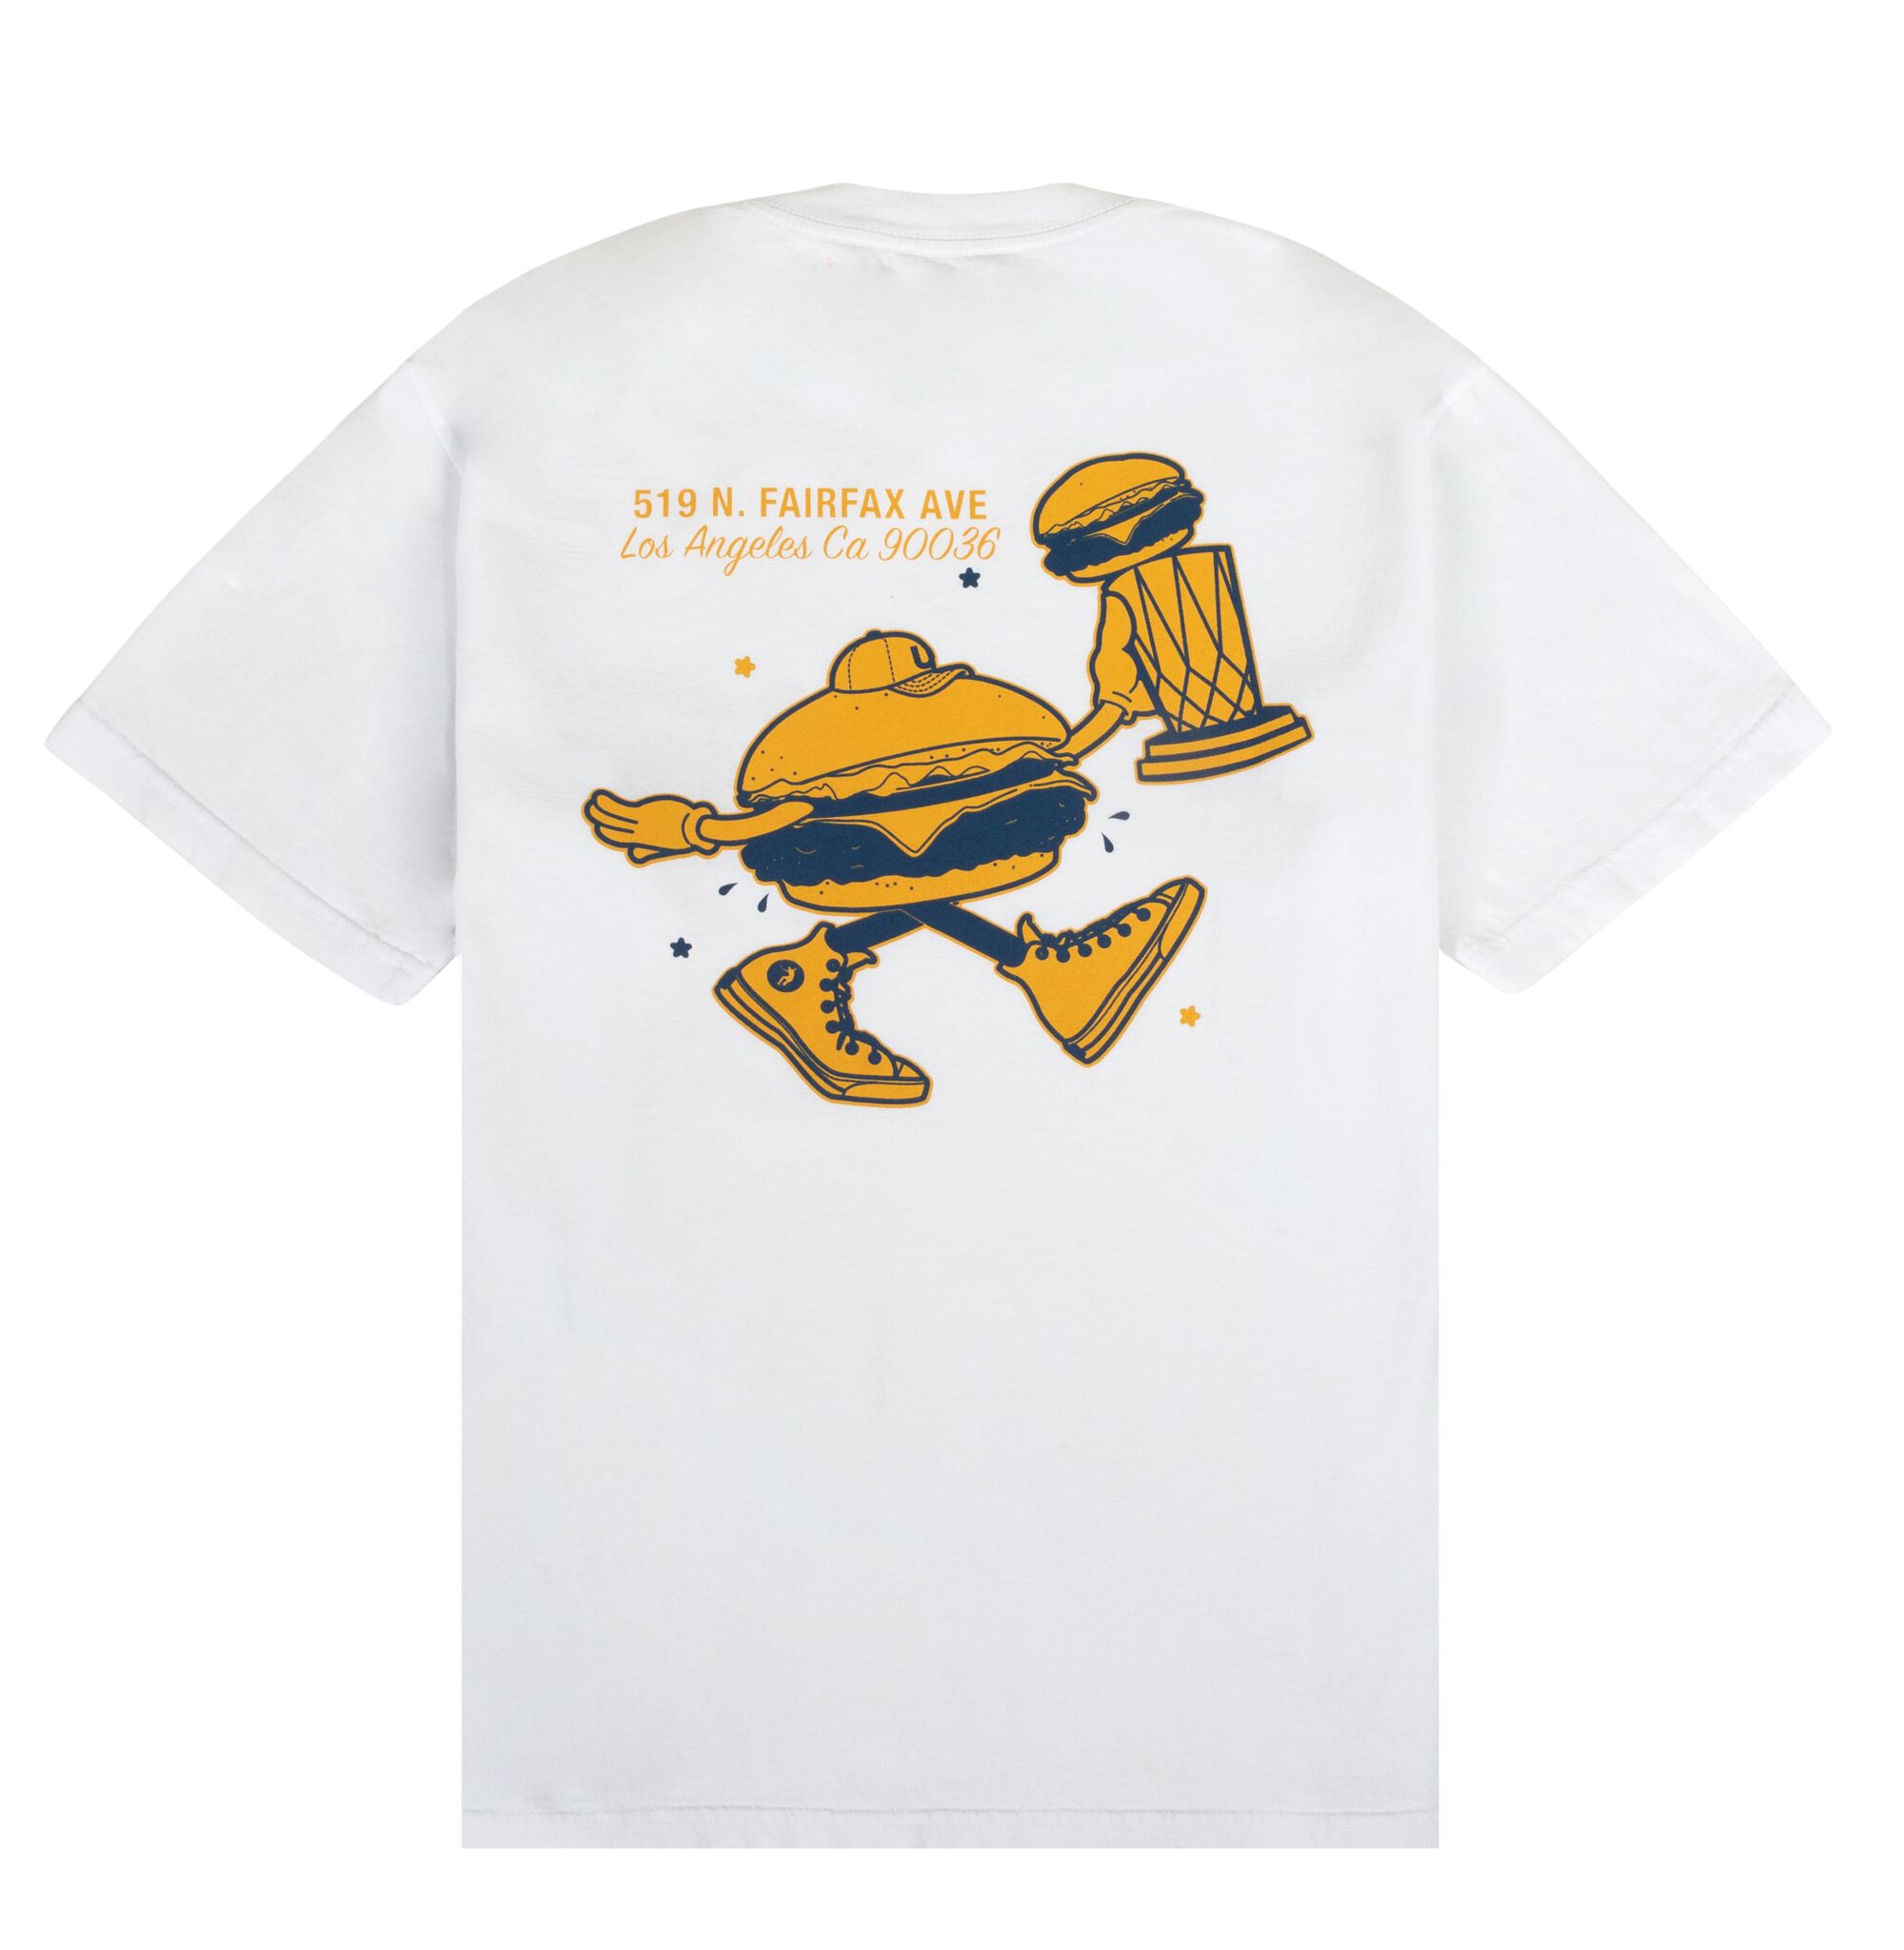 T-shirt with walking hamburger 